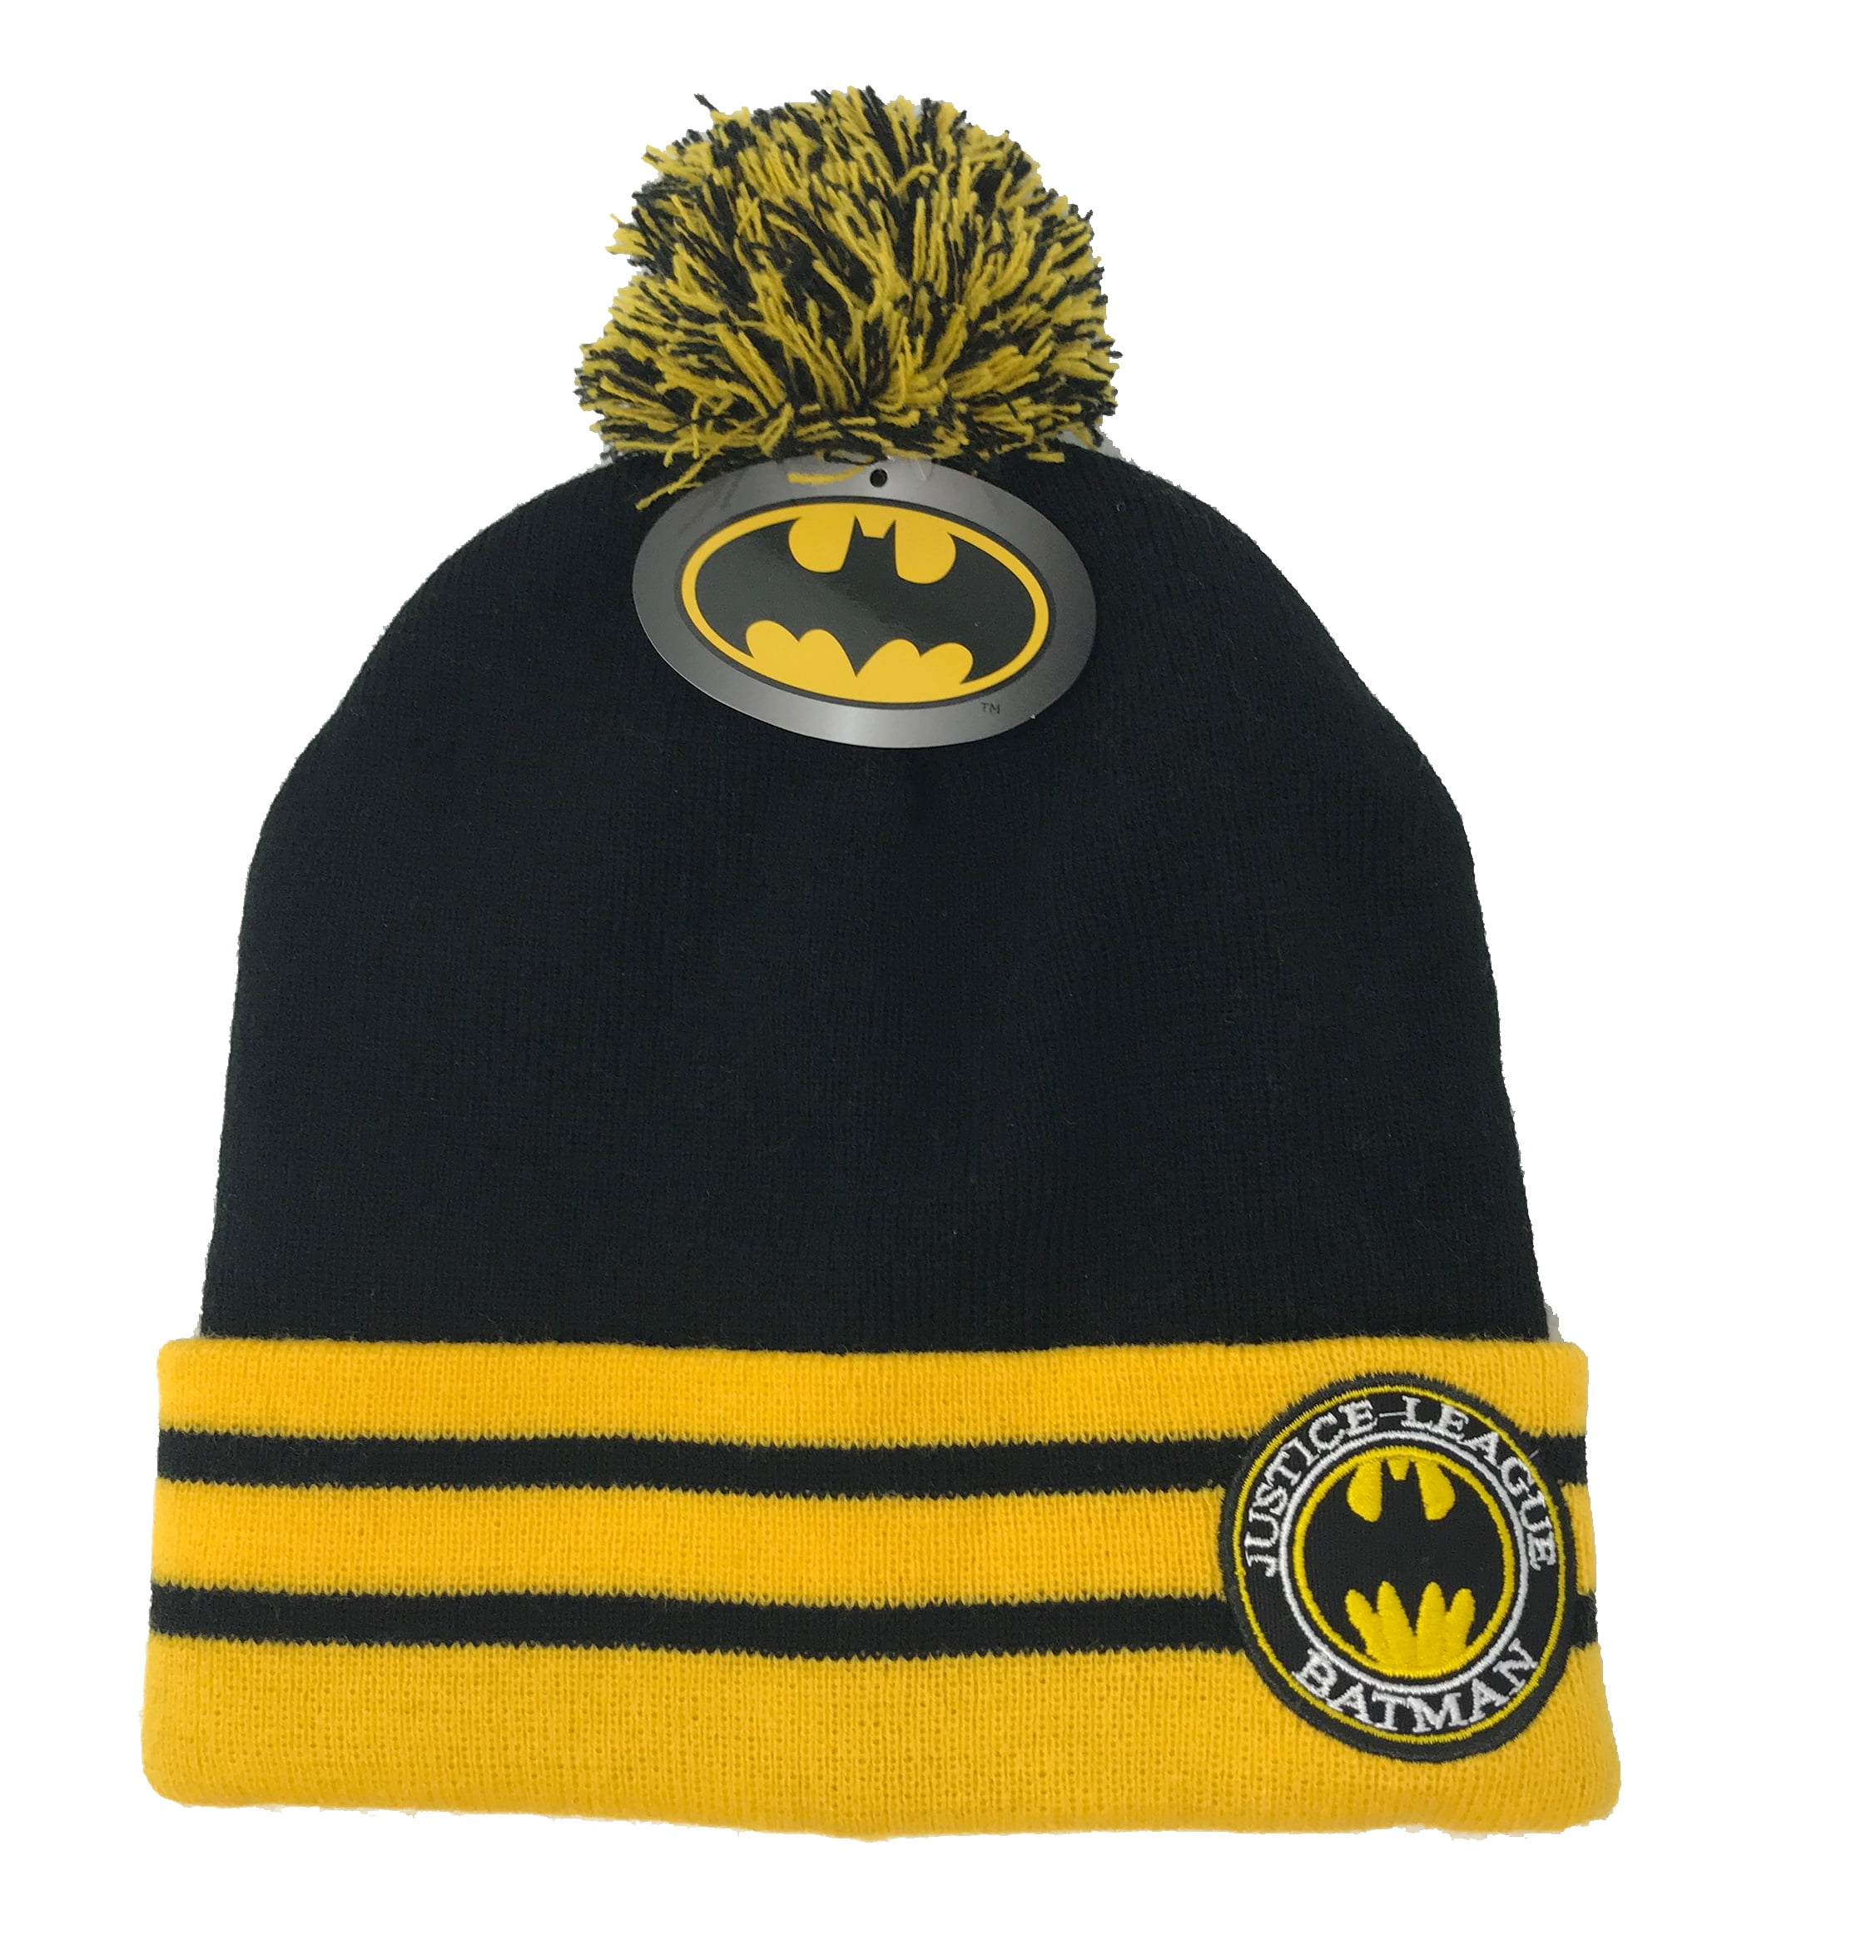 Justice League DC Batman Men's Boy's One Size Fits Most Winter Cuff Beanie Hat